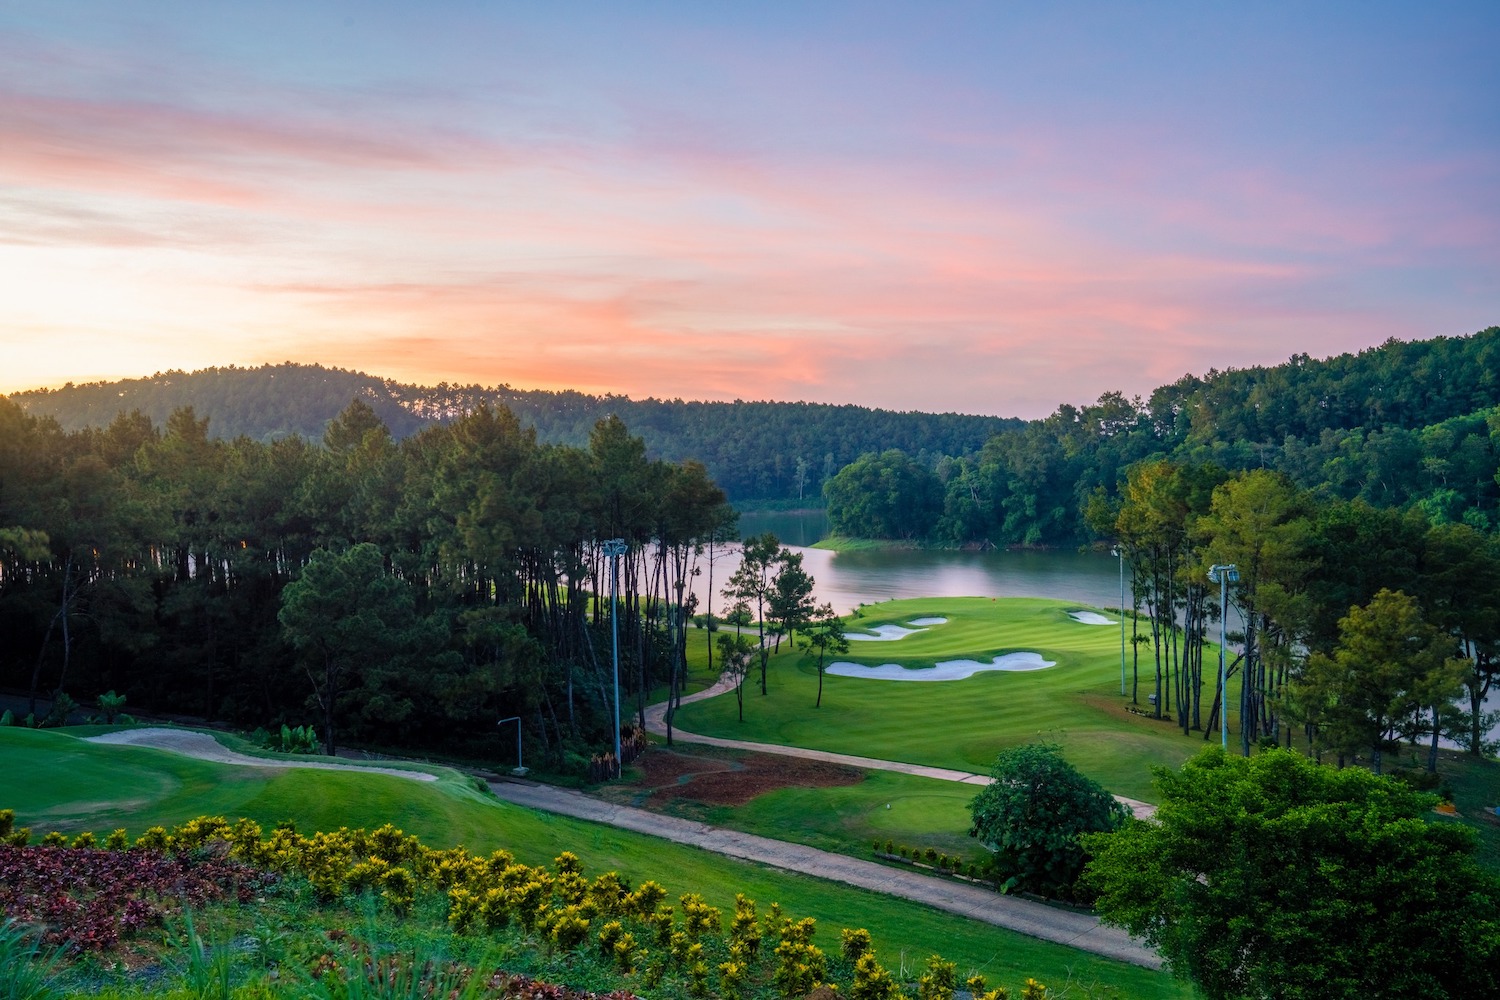 Sân golf Tràng An - Điểm đến thiên đường cho các golfer ở Ninh Bình 7